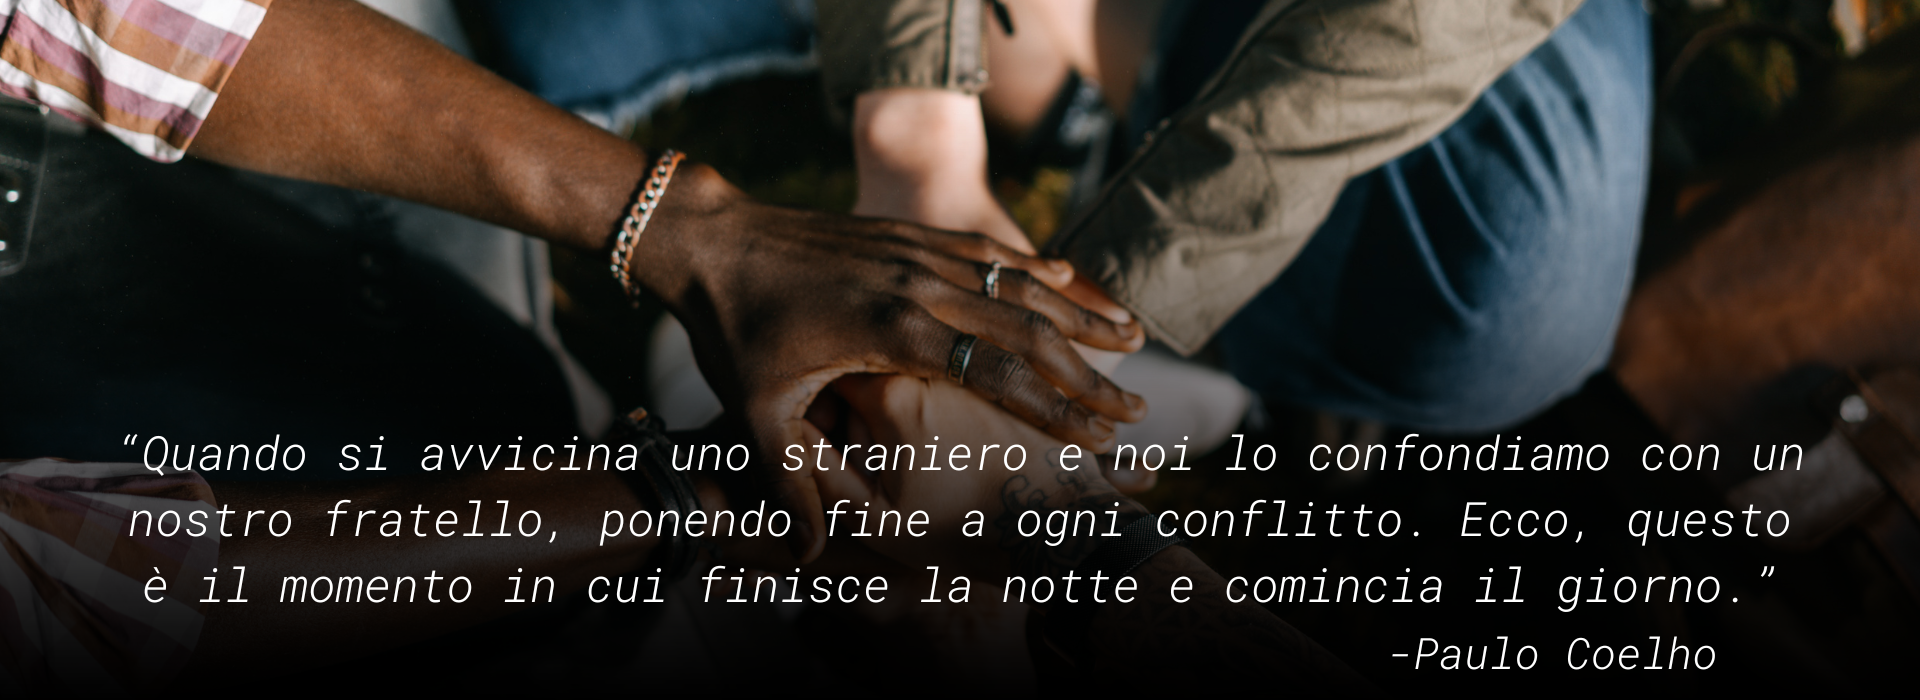 MeltingPot: “Quando si avvicina uno straniero e noi lo confondiamo con un nostro fratello, ponendo fine a ogni conflitto. Ecco, questo è il momento in cui finisce la notte e comincia il giorno.” -Paulo Coelho